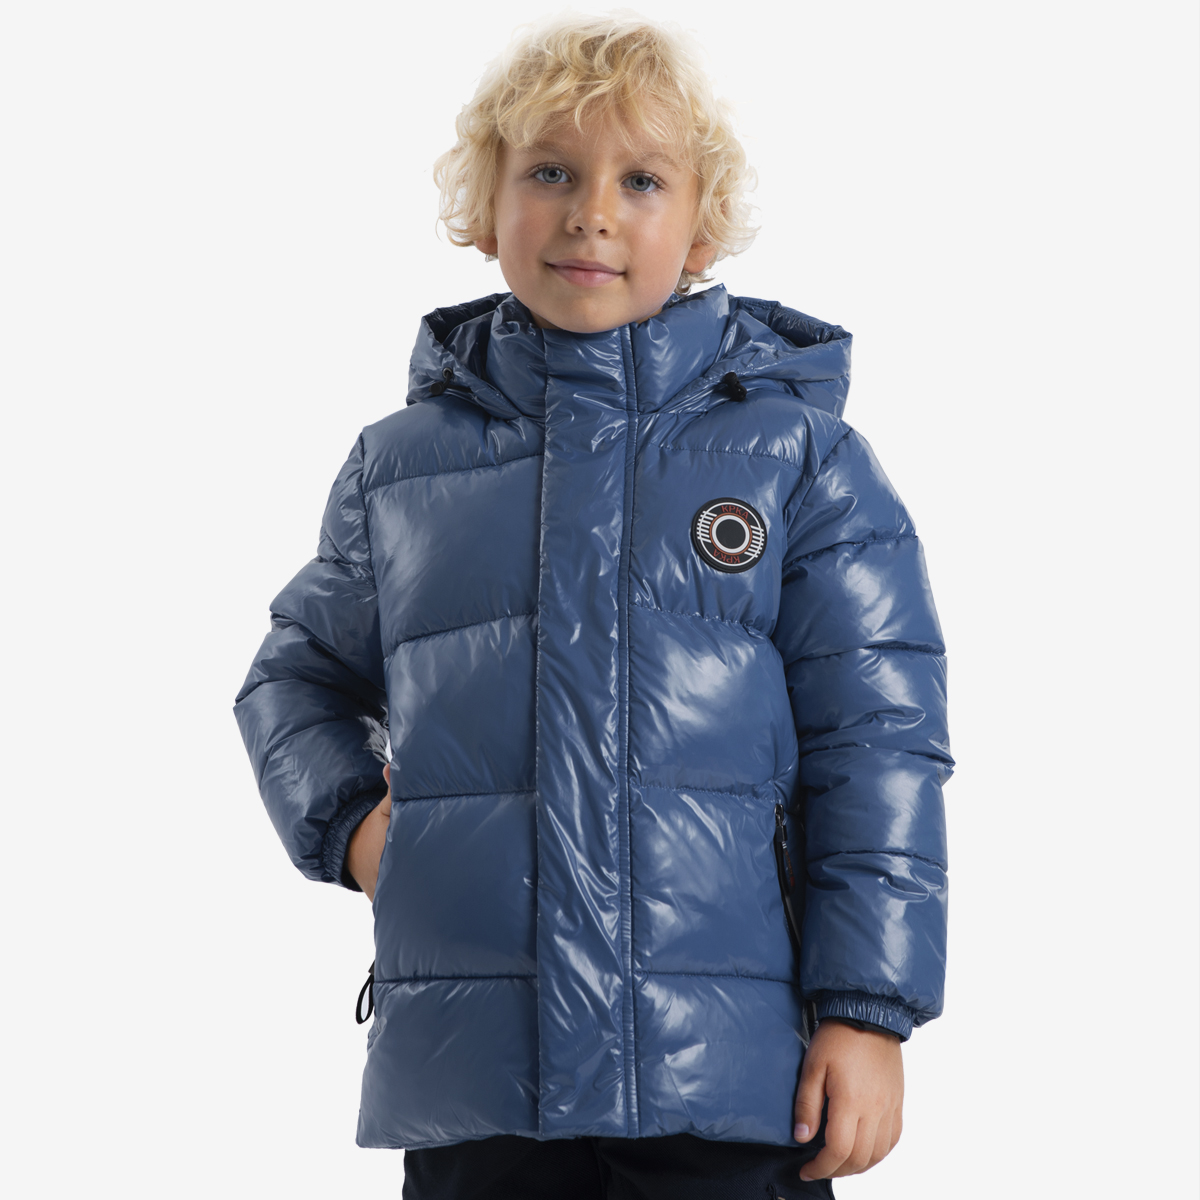 Куртка детская Kapika IKBCK06-Z2, цвет синий, размер 110 серая куртка пуховик с капюшоном outhere детская